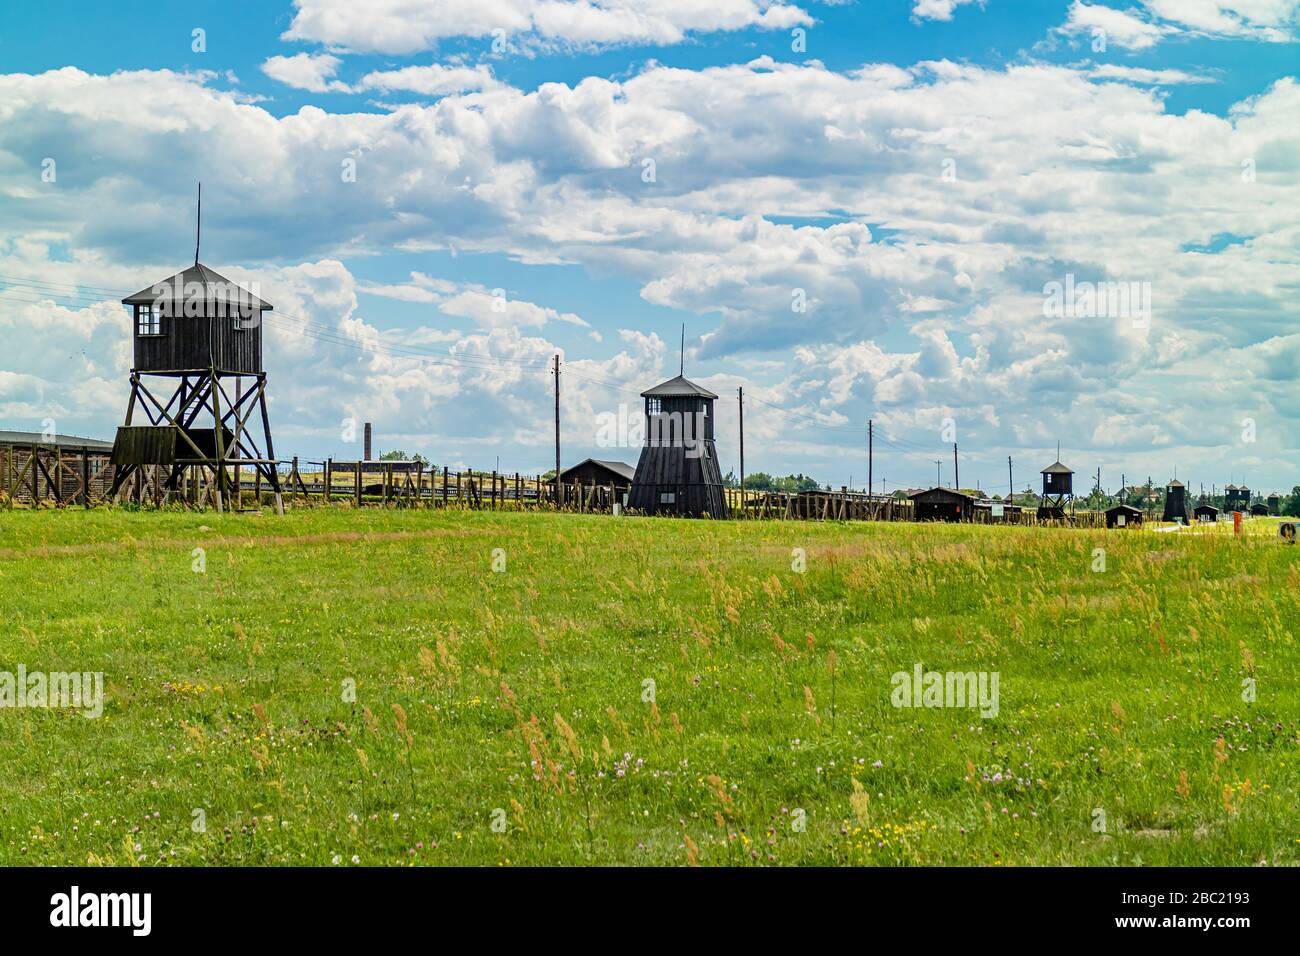 Zaun und Wachtürme rund um das Nazi-Konzentrationslager Majdanek, das jetzt als Gedenkstätte geöffnet ist. Lublin, Polen. Juni 2017. Stockfoto